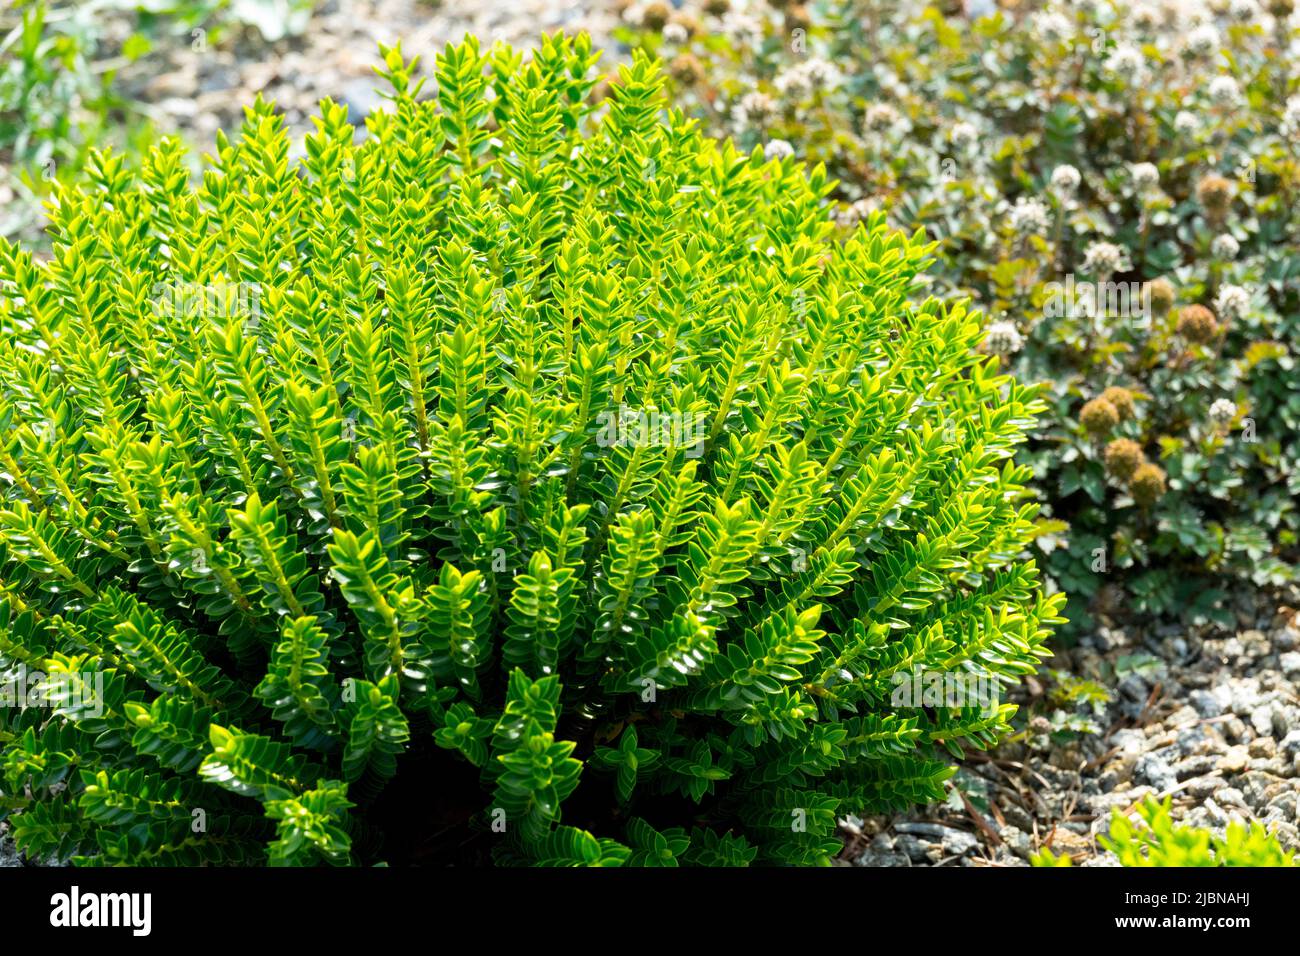 Hebe 'McKean', genus Veronica cupressoides, Hebe 'Emerald Gem', Decorative, Shrub in,Garden, Plant Stock Photo